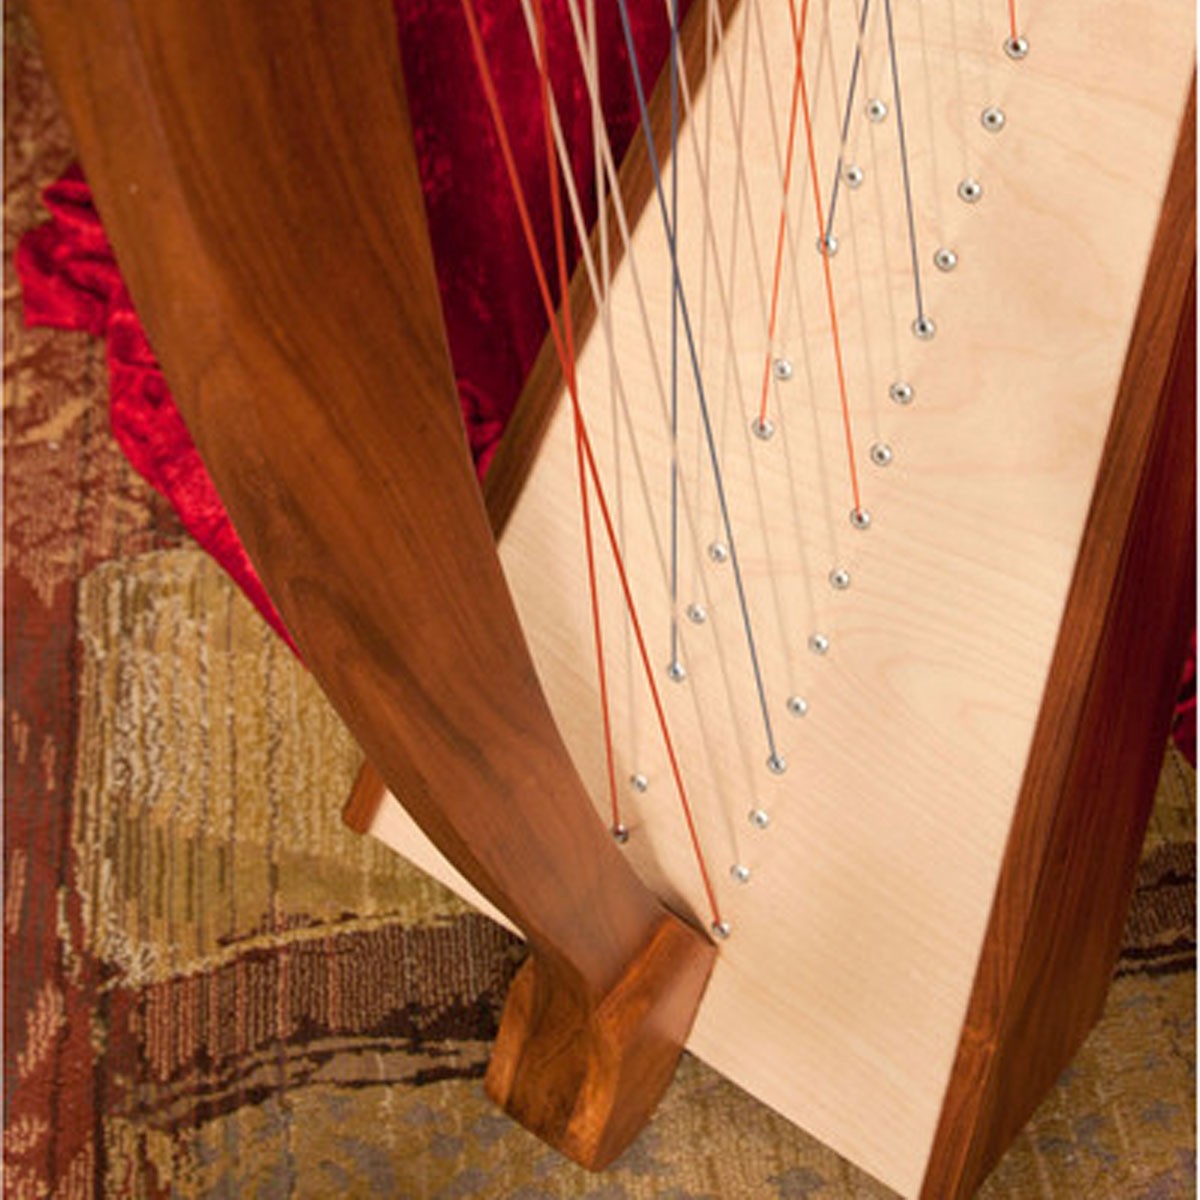 Cross Strung Harp